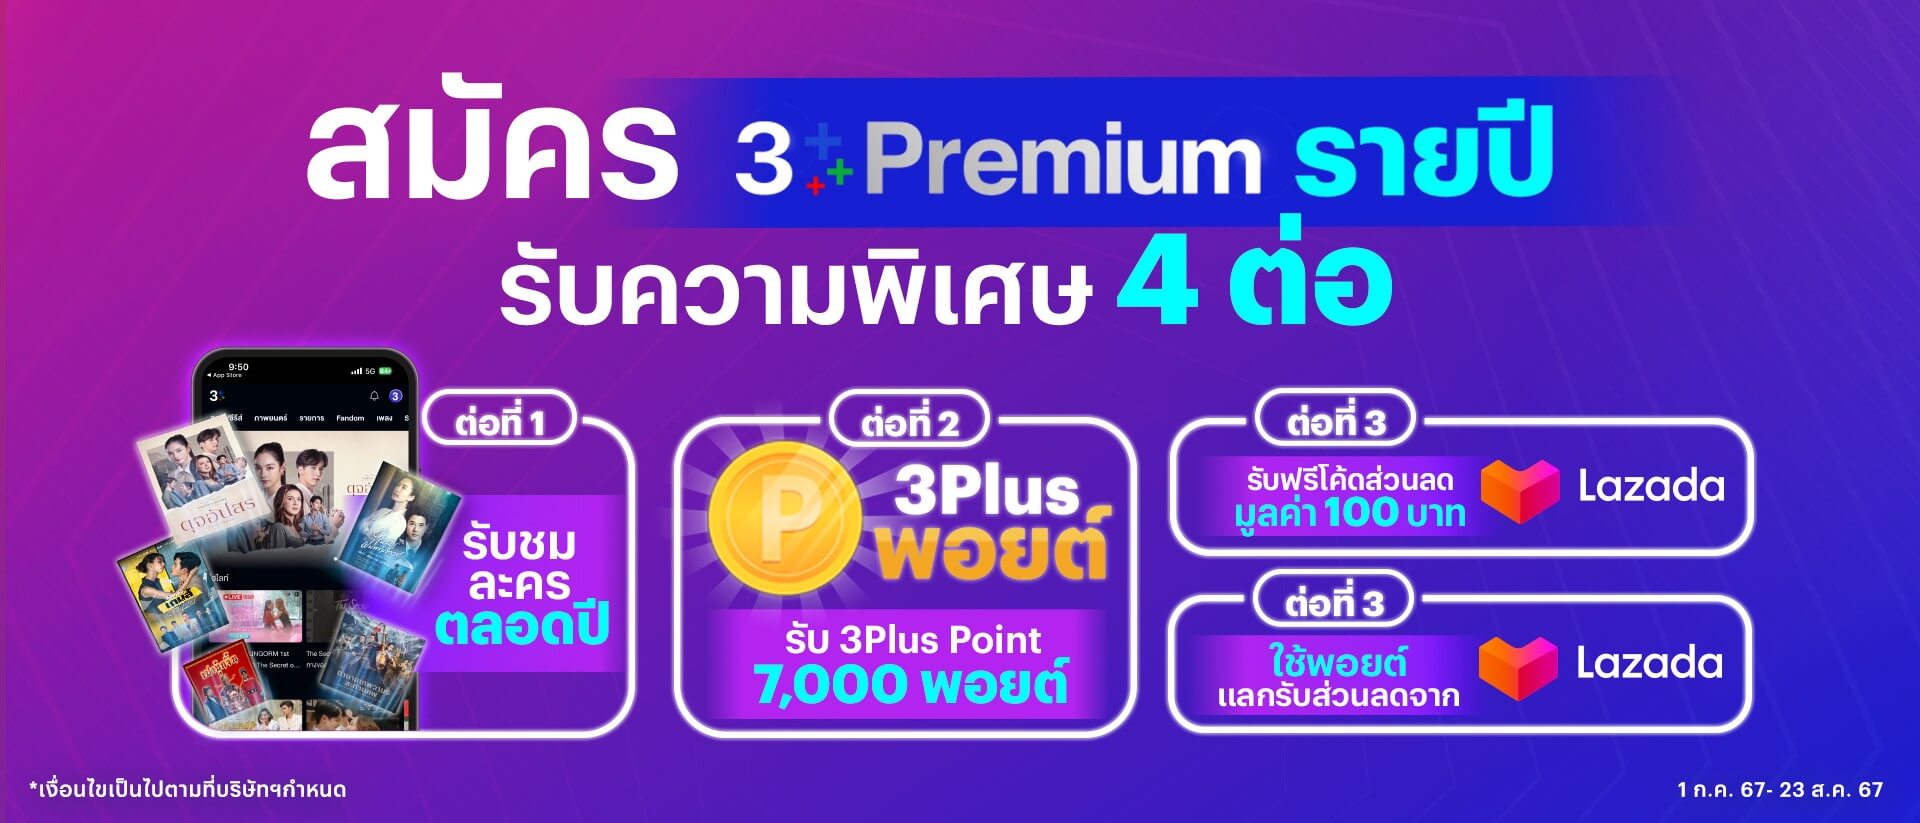 3Plus Premium : สมัครสมาชิกรายปีพร้อมรับความพิเศษ 4 ต่อ